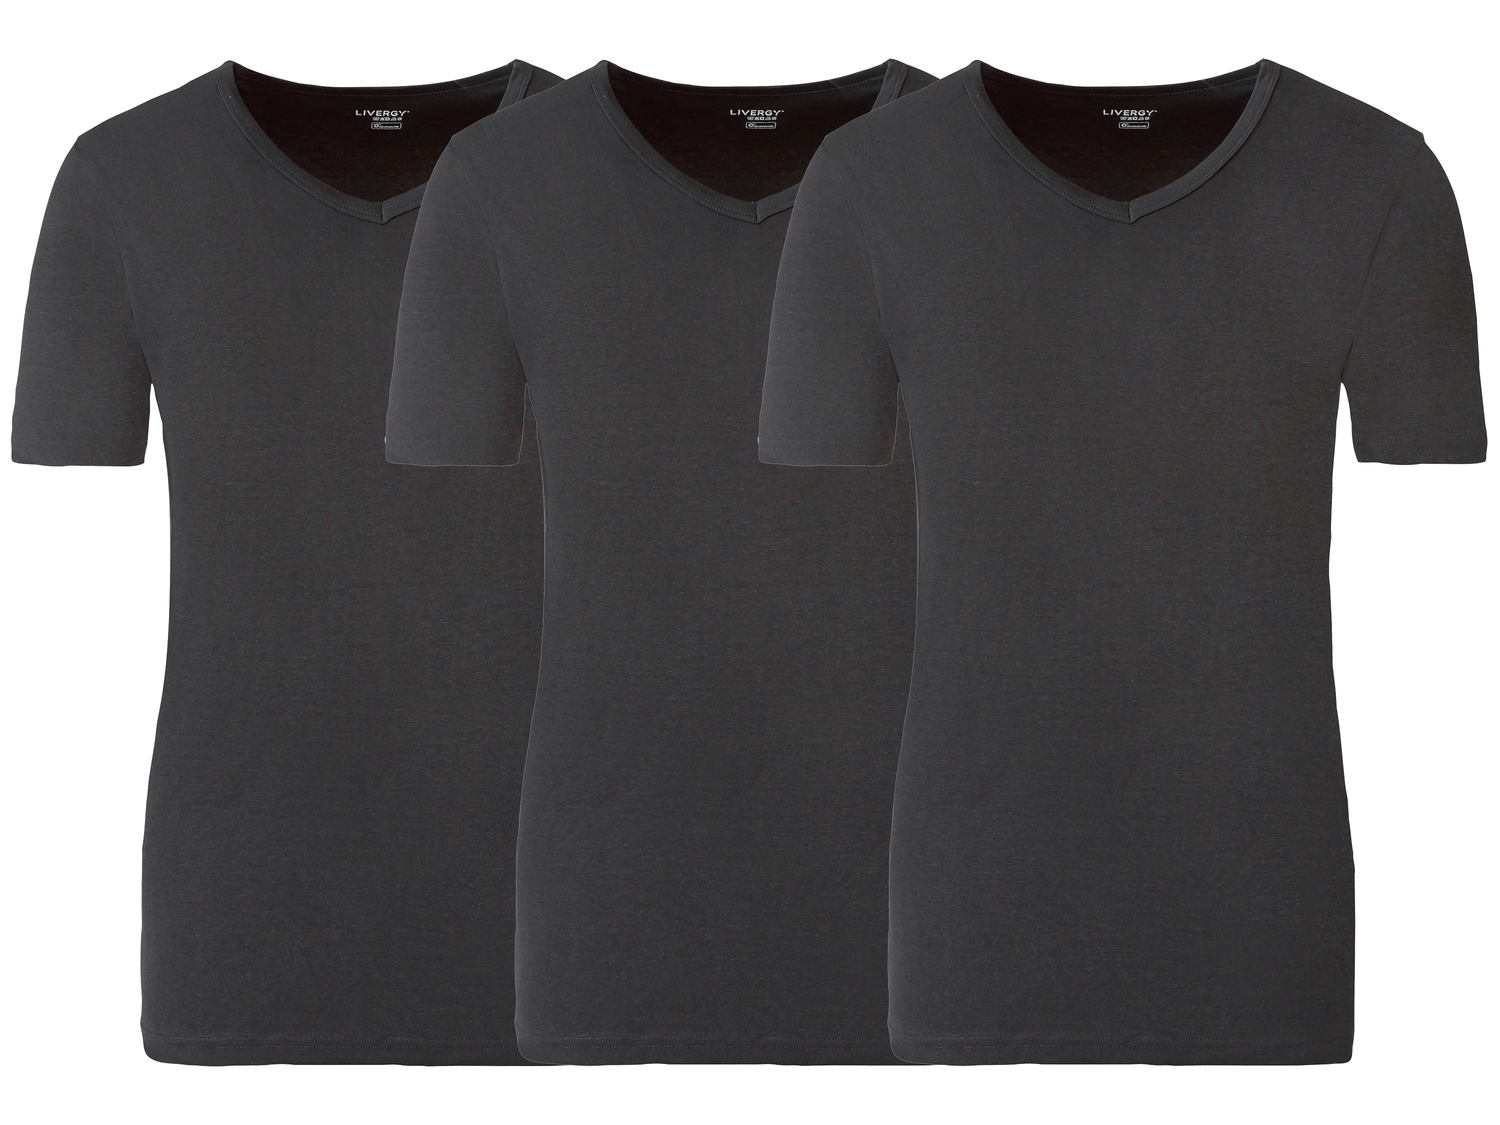 T-Shirt intima da uomo Livergy, prezzo 9.99 &#8364; 
3 pezzi - Misure: S-L 
- ...